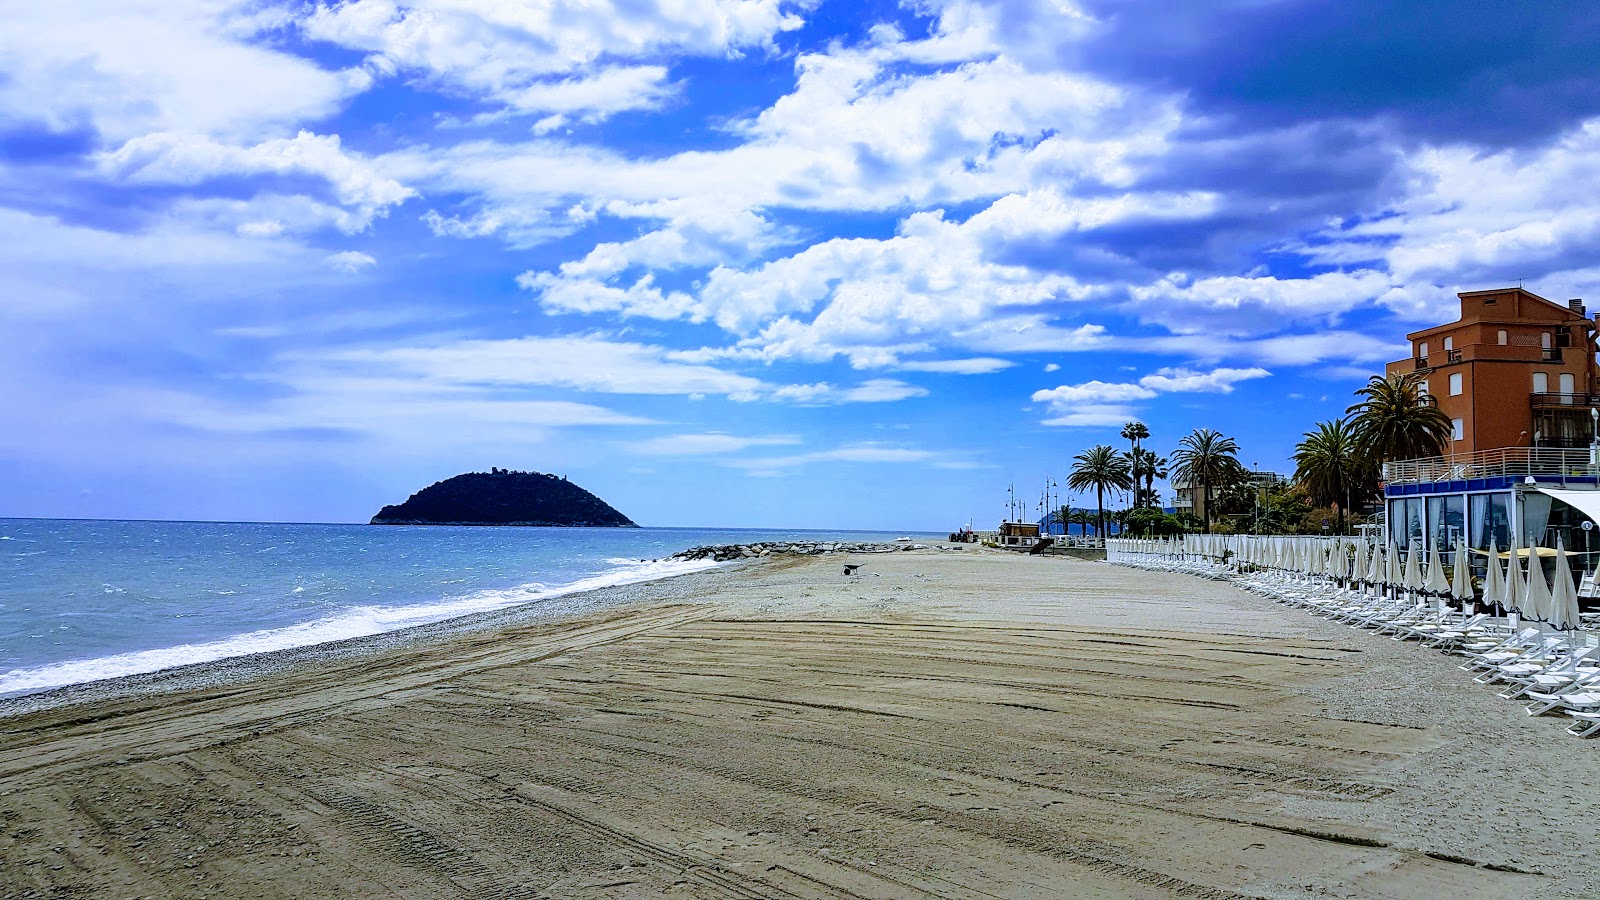 Fotografie cu Doria beach cu plajă spațioasă